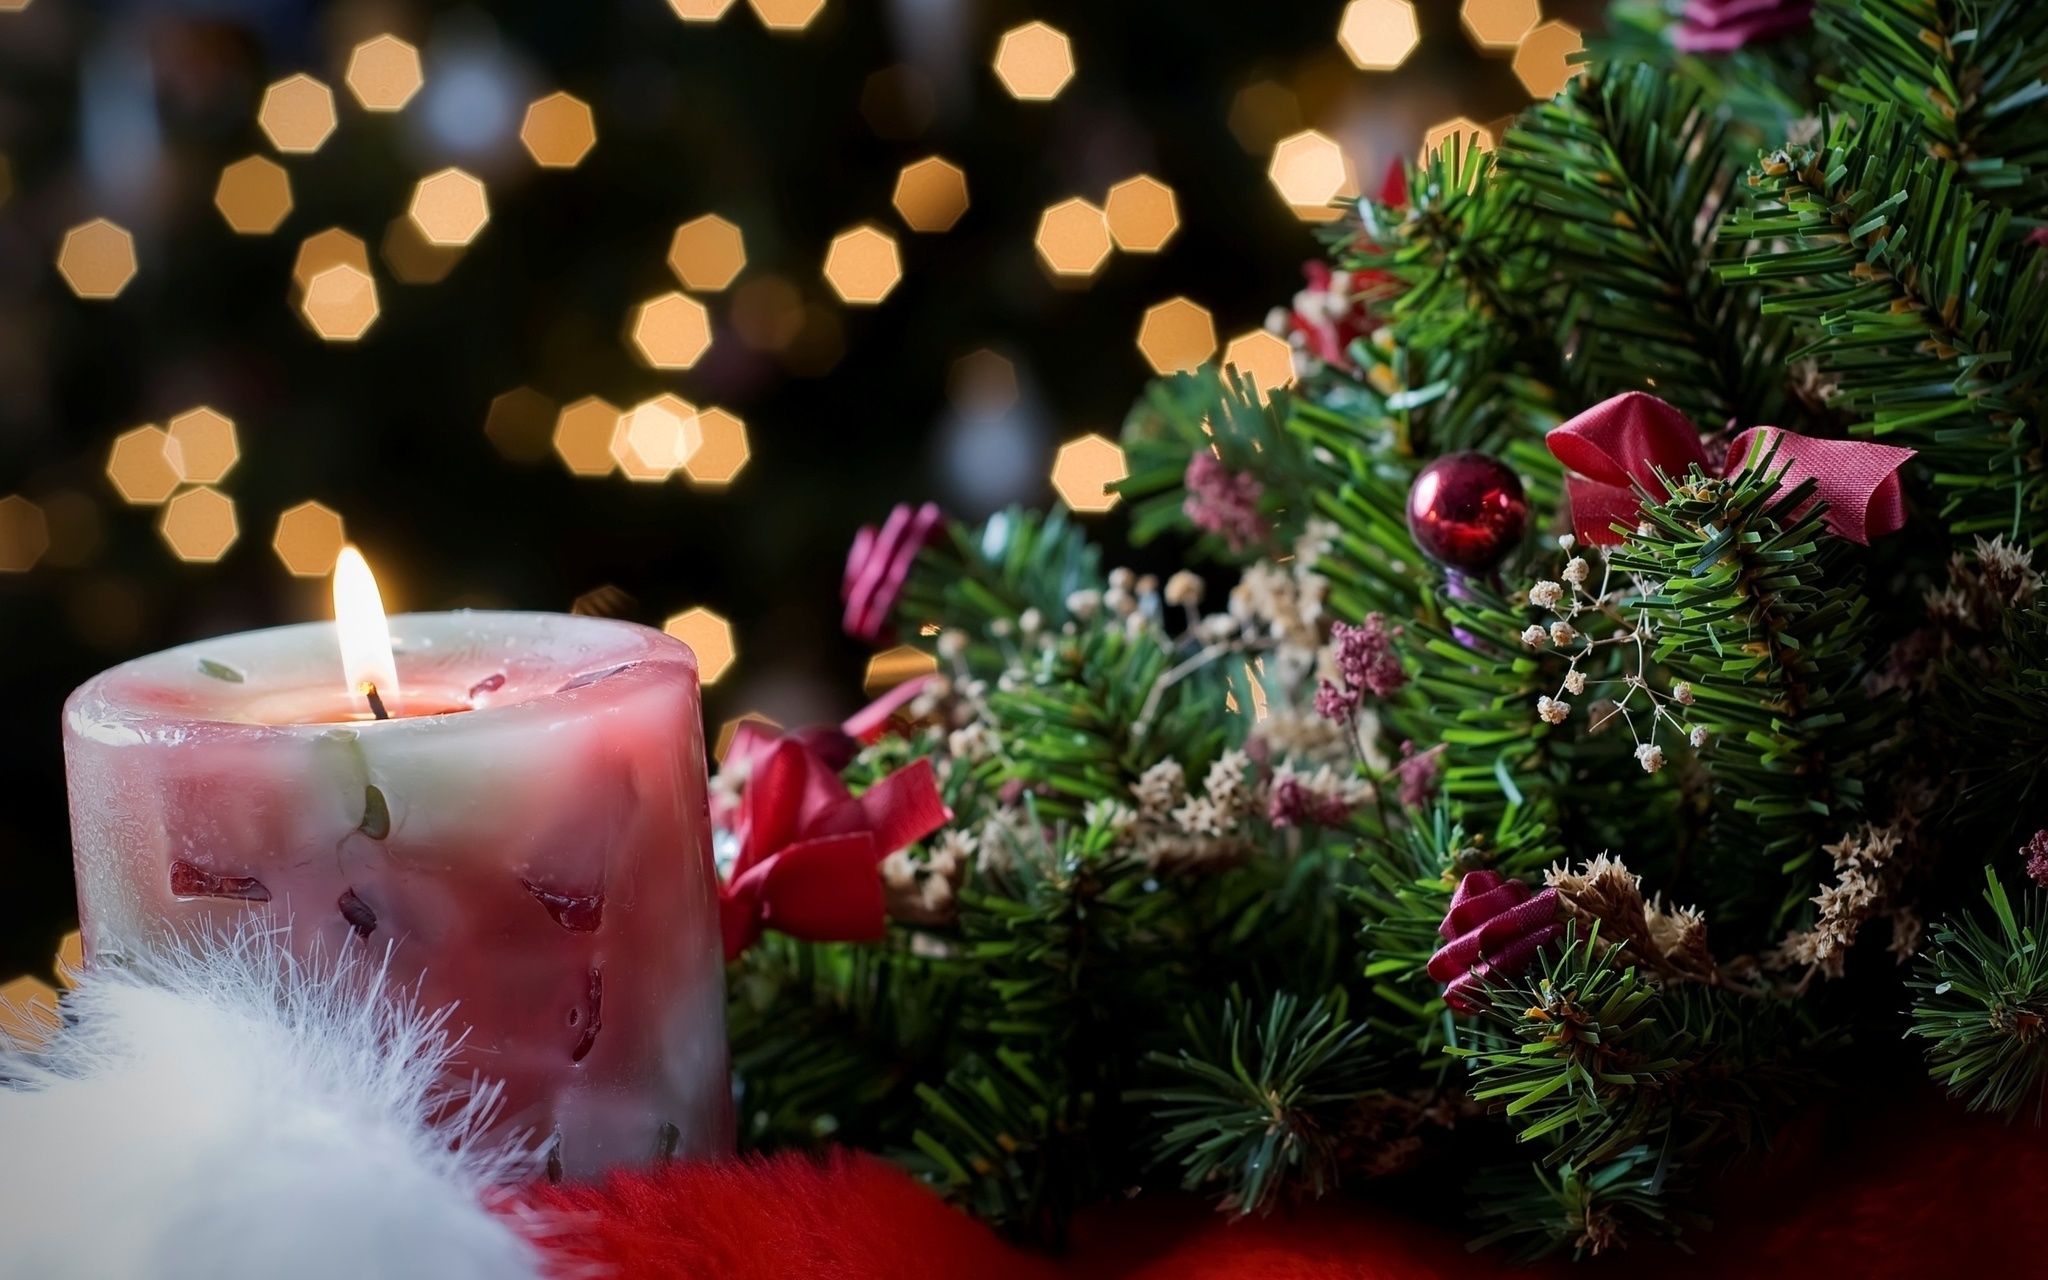 Сеть магазинов Vospeta поздравляет вас с наступающим Новым Годом и Рождеством